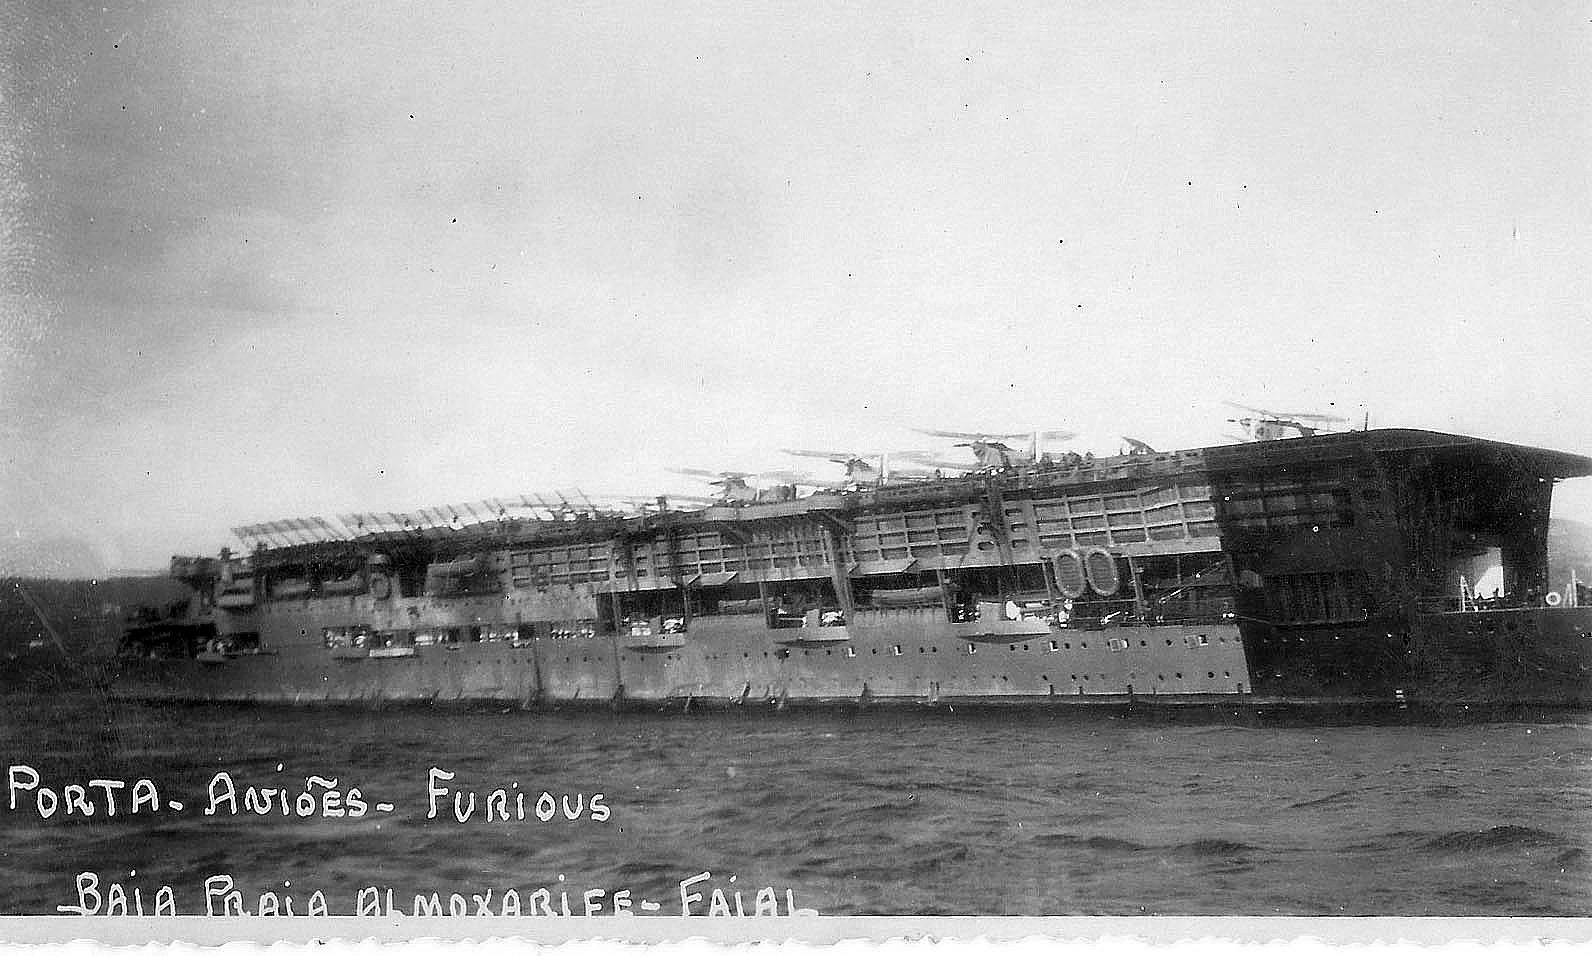 2. Porta Aviões da Royal Navy FURIOUS_1934.jpg